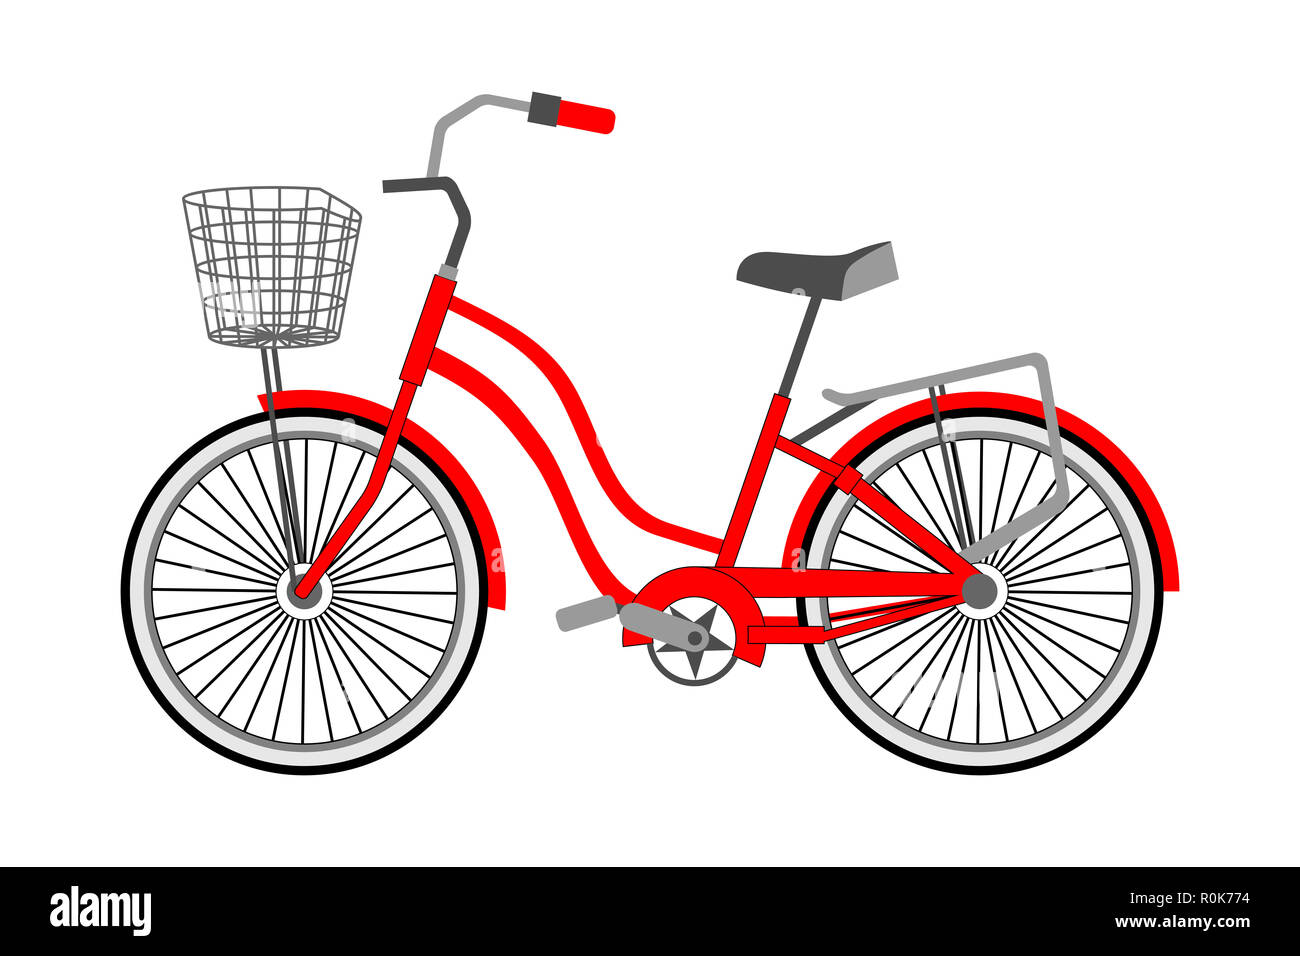 Télévision vecteur illustration d'un vélo de ville. Seul vélo avec panier en osier avant. Vélo concept, isolé. Symbole à la mode pour les catalogues, de l'information, Banque D'Images